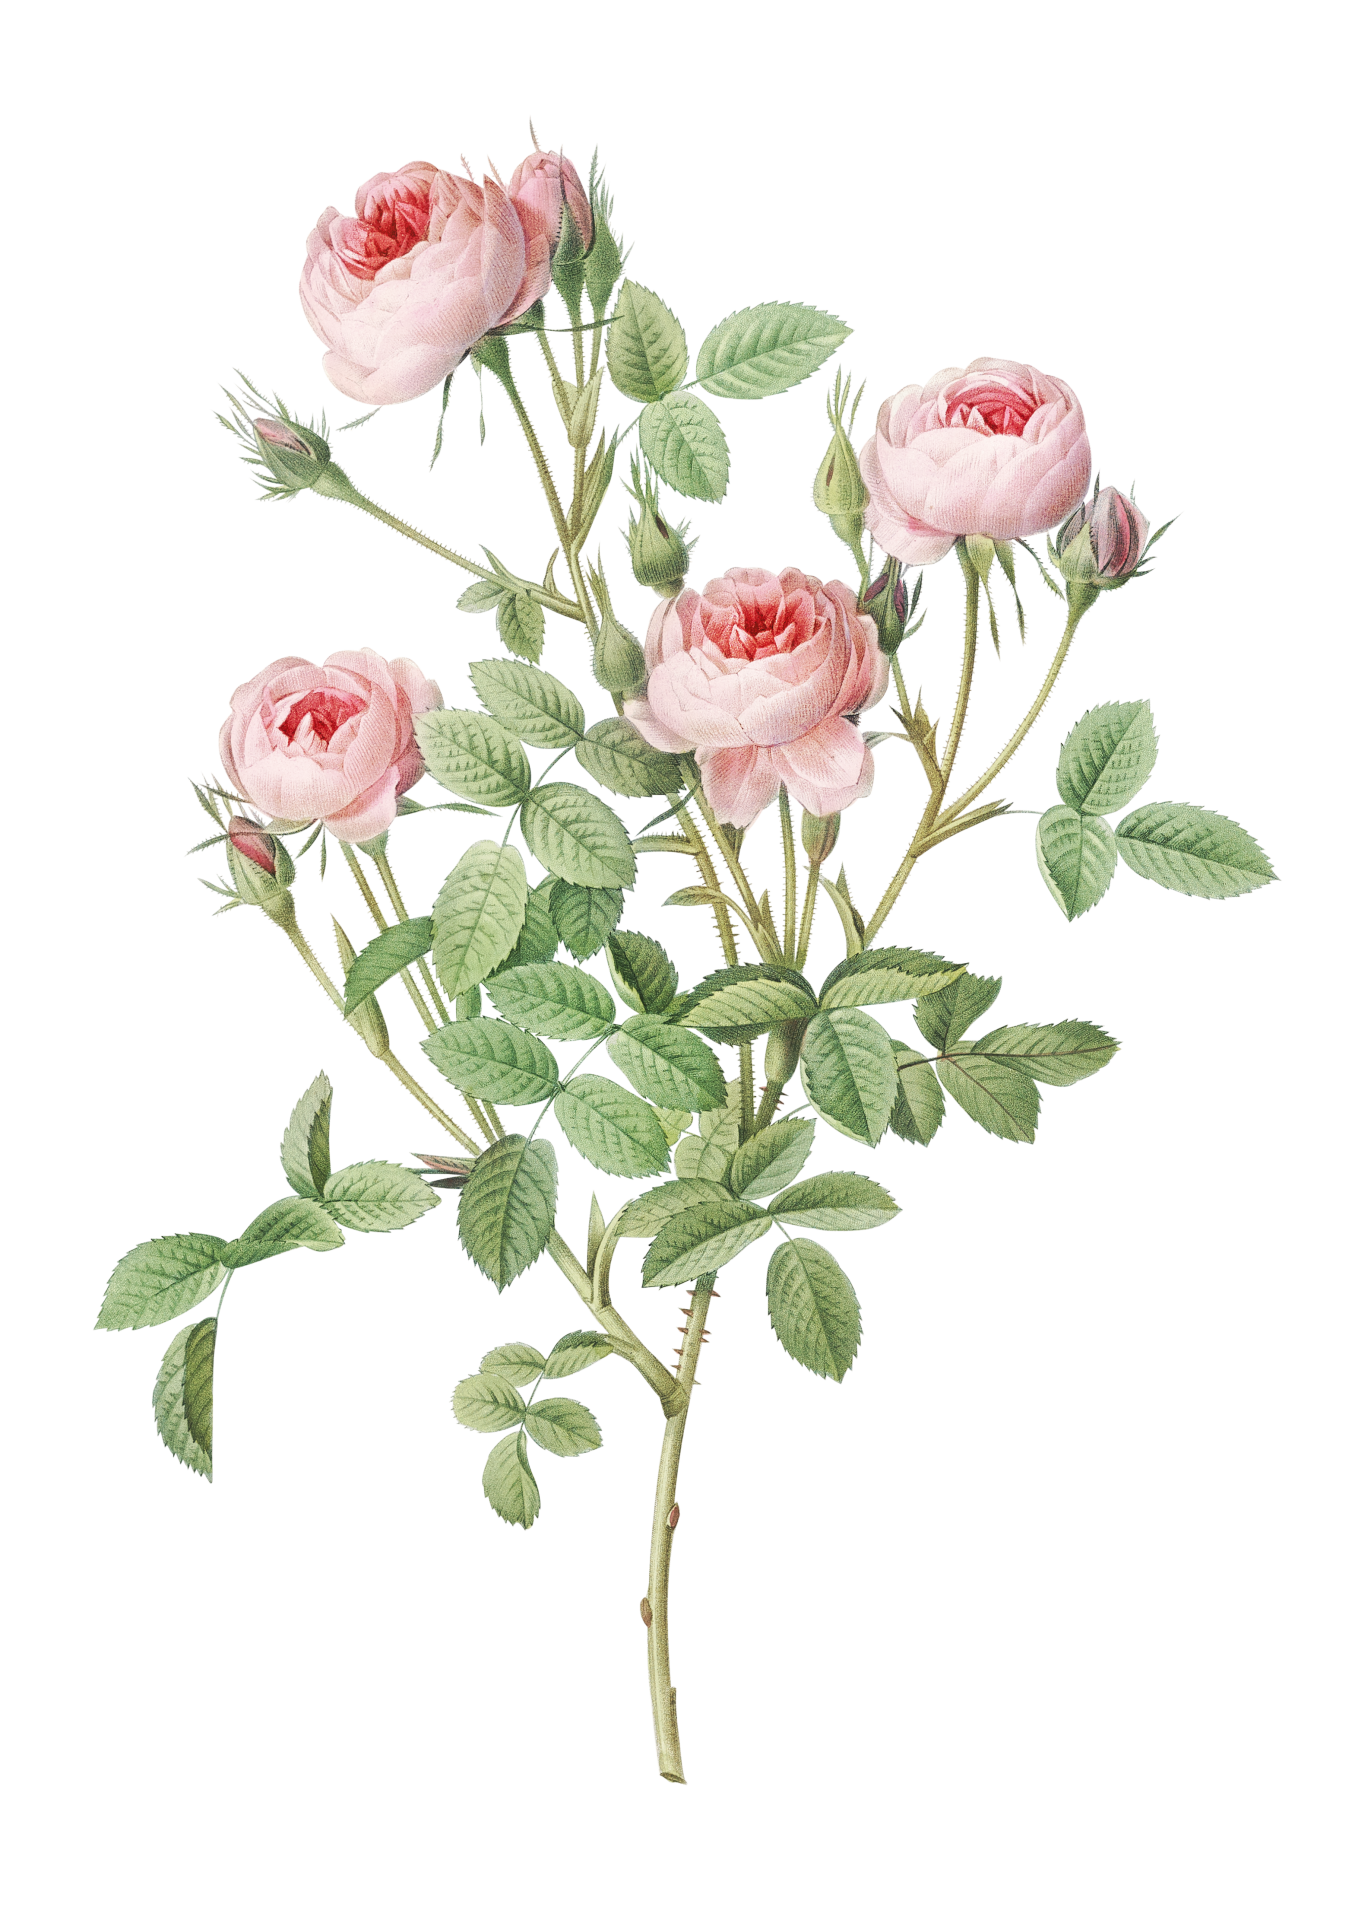 Rose Flower Vintage Art